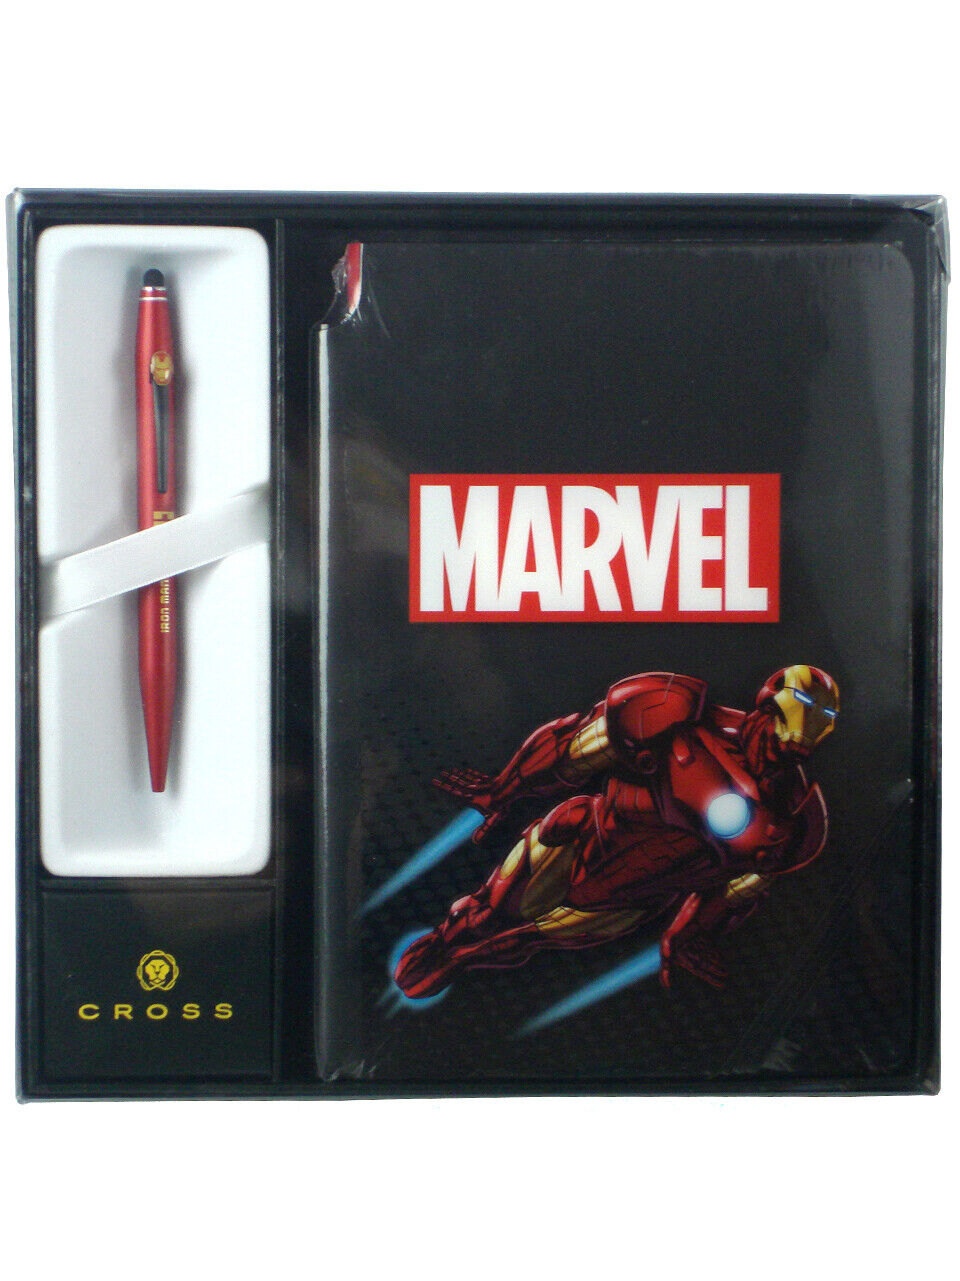 Cross X Tech 2 Iron Man Multi Ball Pen Journal Set Marvel Comics Avengers New